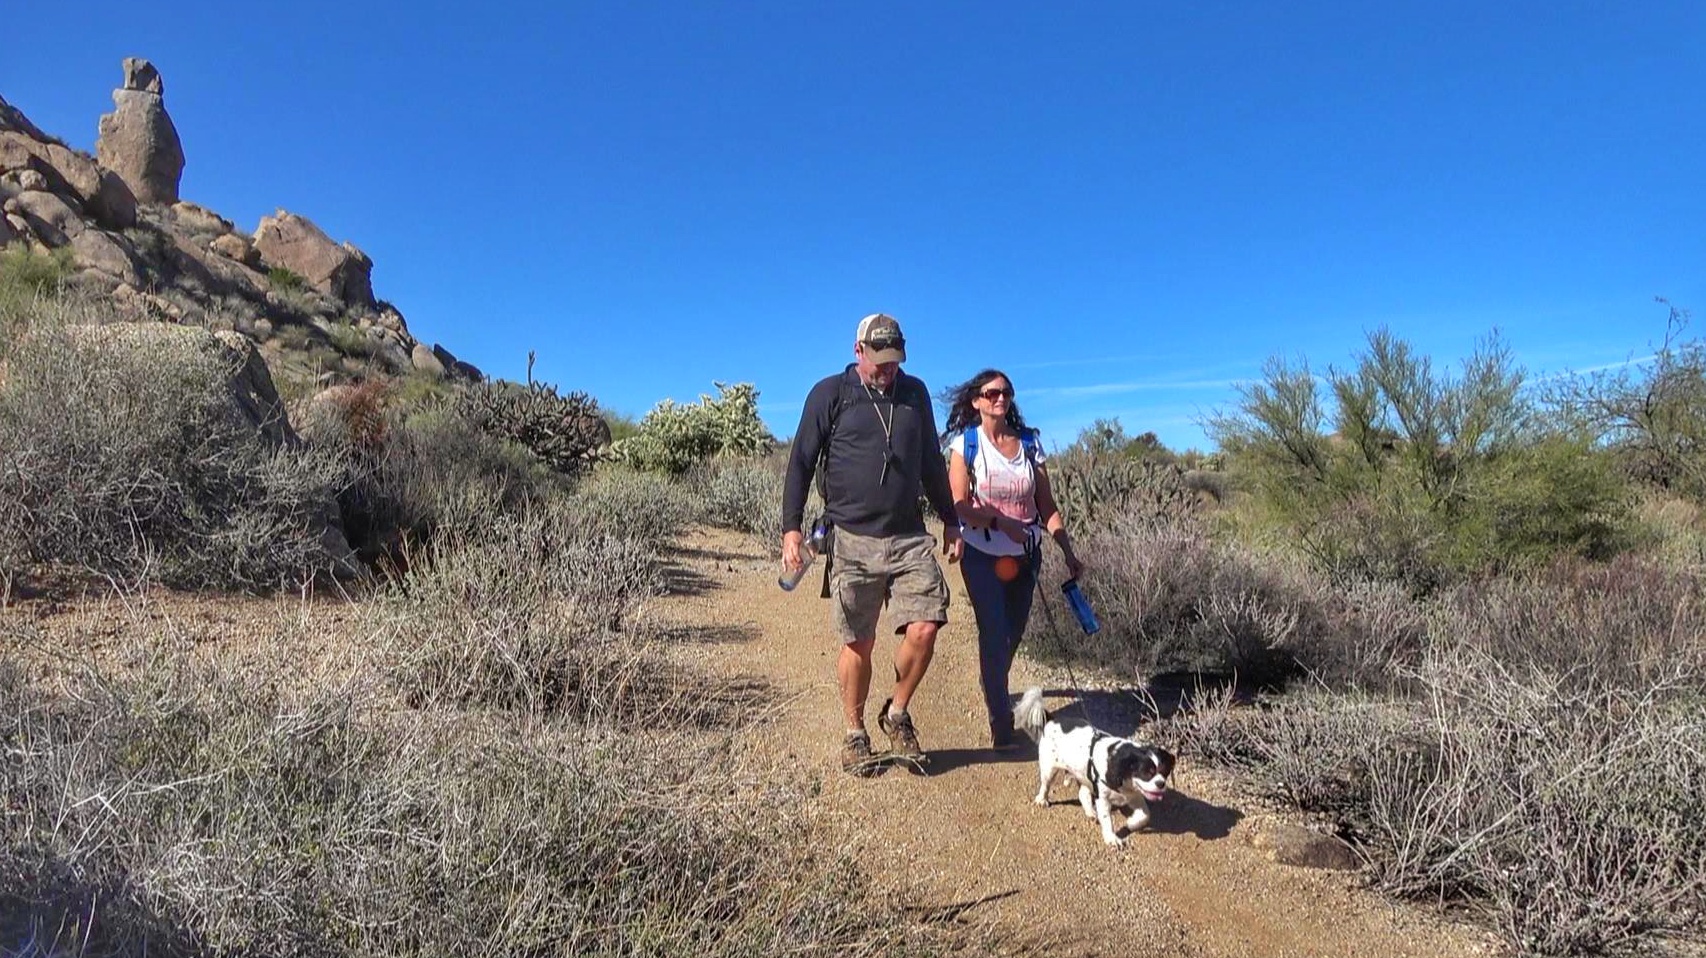 Desert Hiking Tips for Travelers